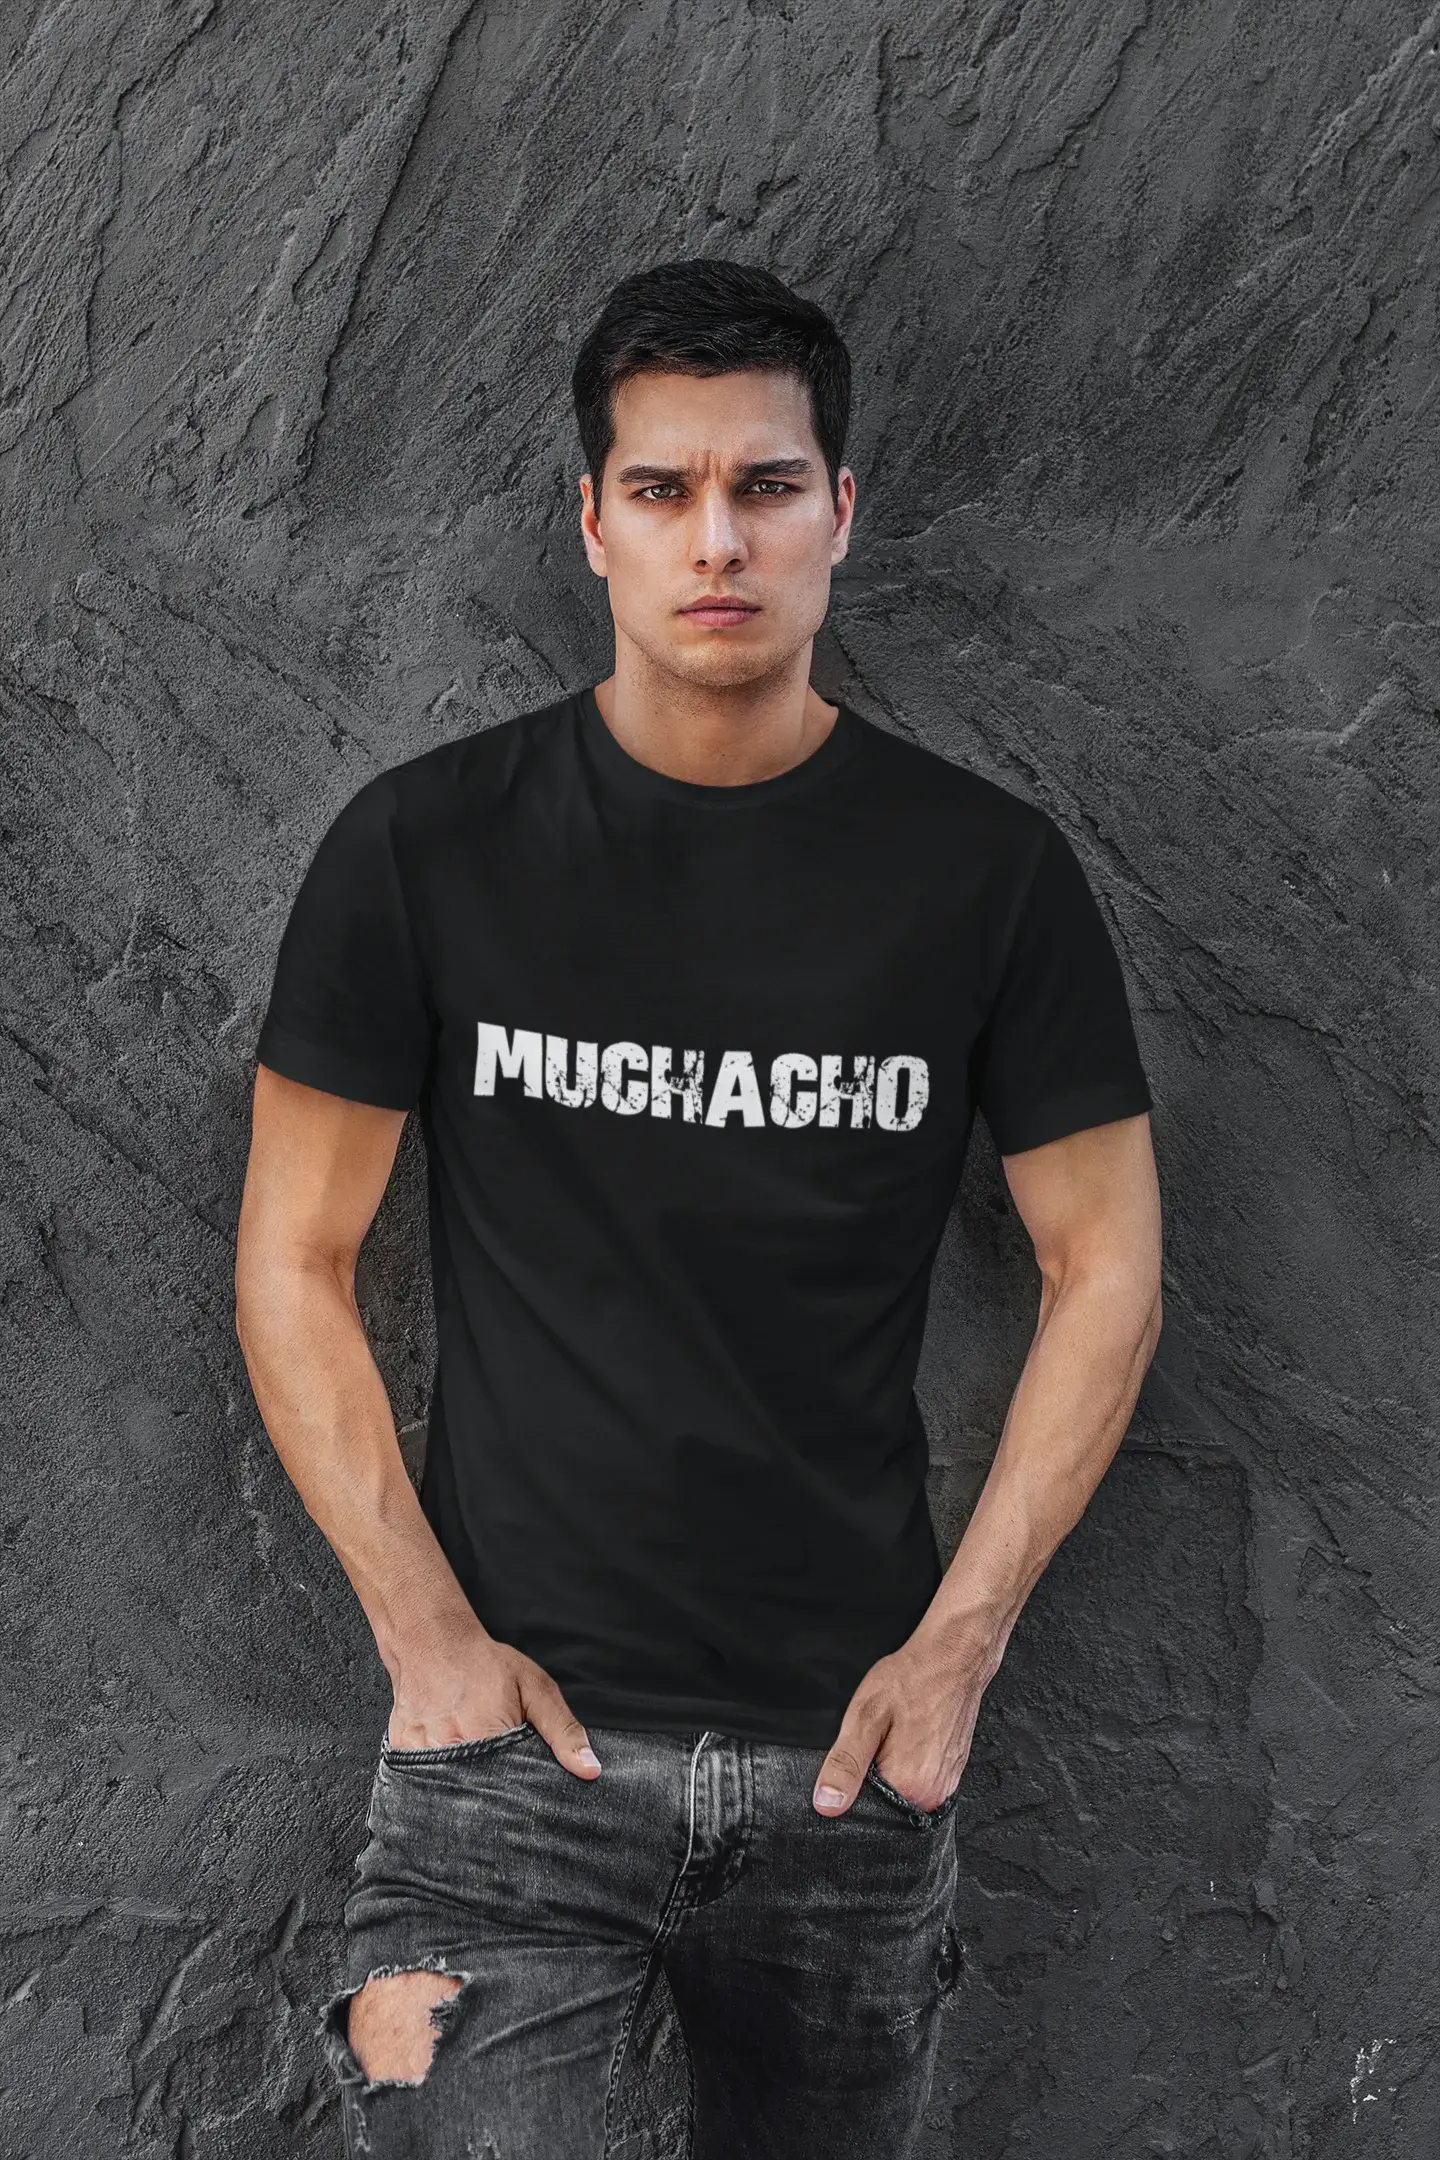 muchacho Men's T shirt Black Birthday Gift 00550